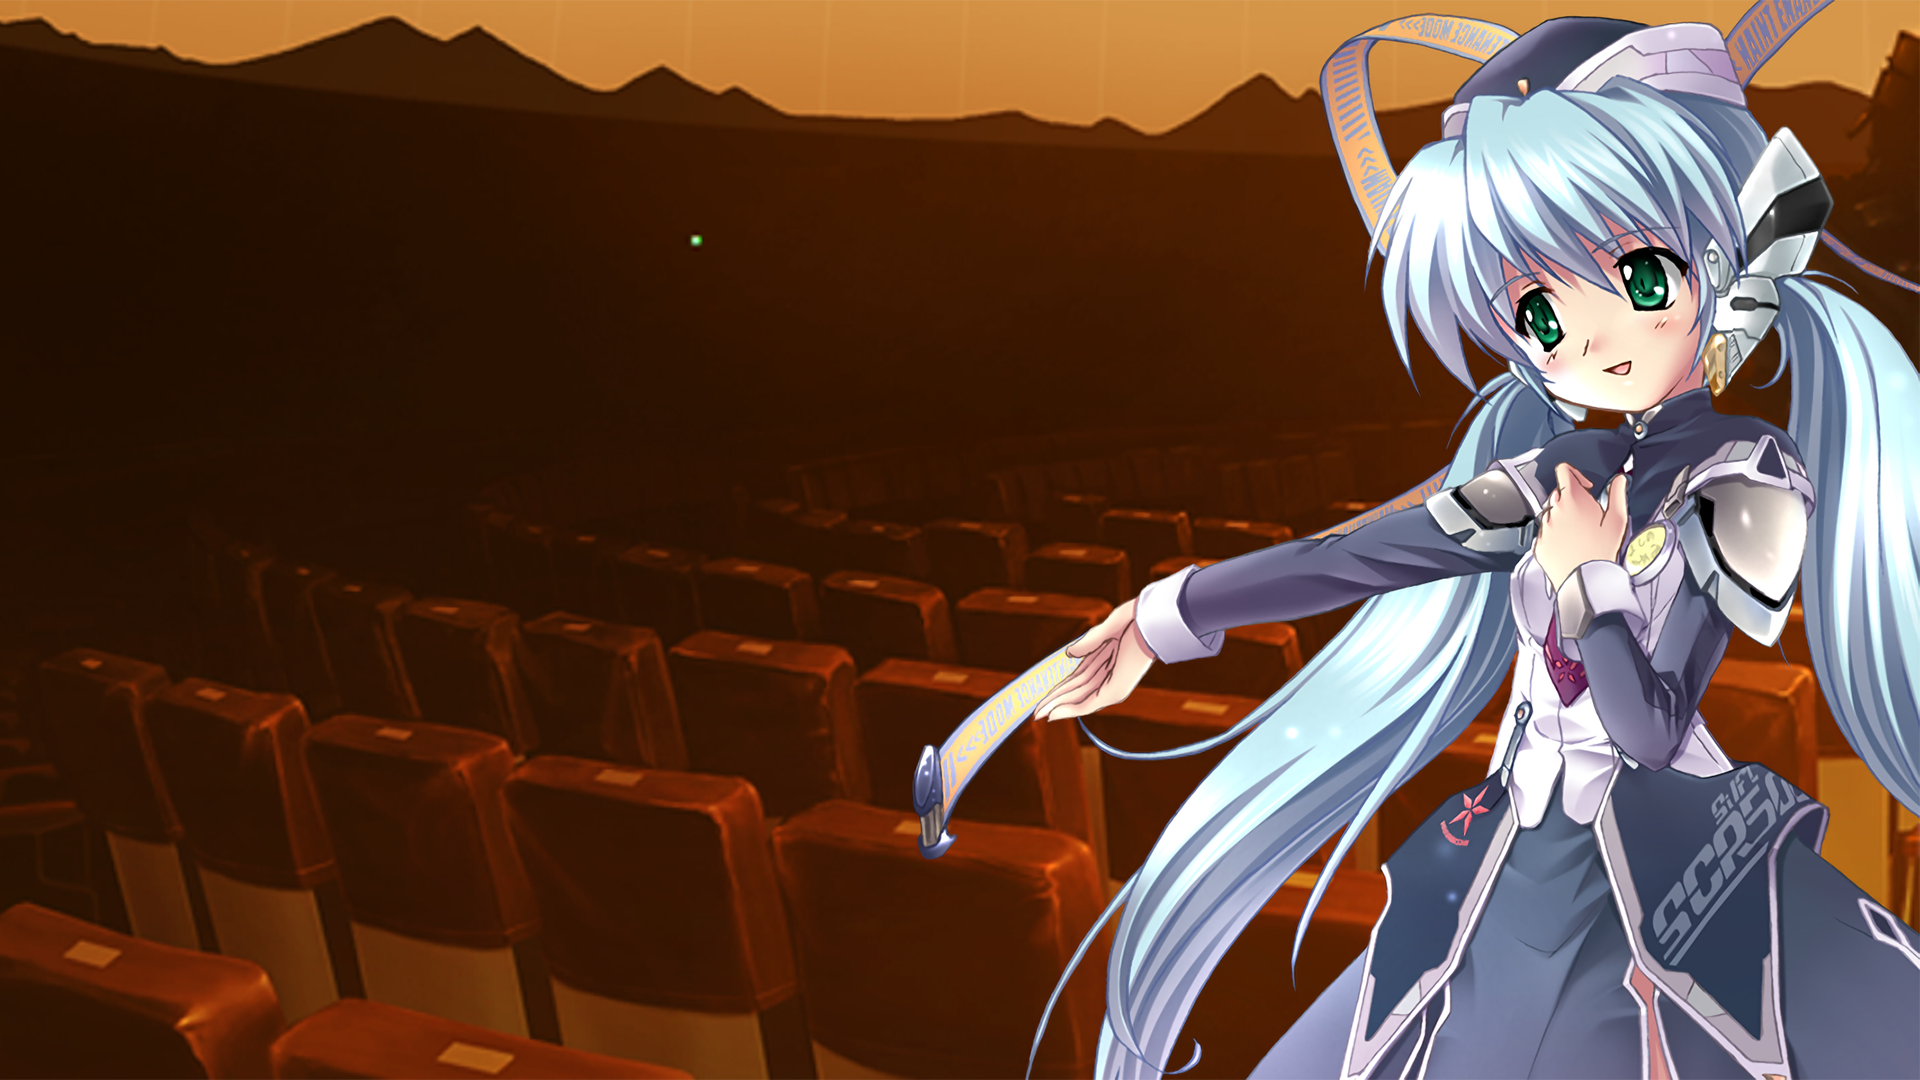 Anime Planetarian: Chiisana Hoshi no Yume Fondo de pantalla HD | Fondo de Escritorio